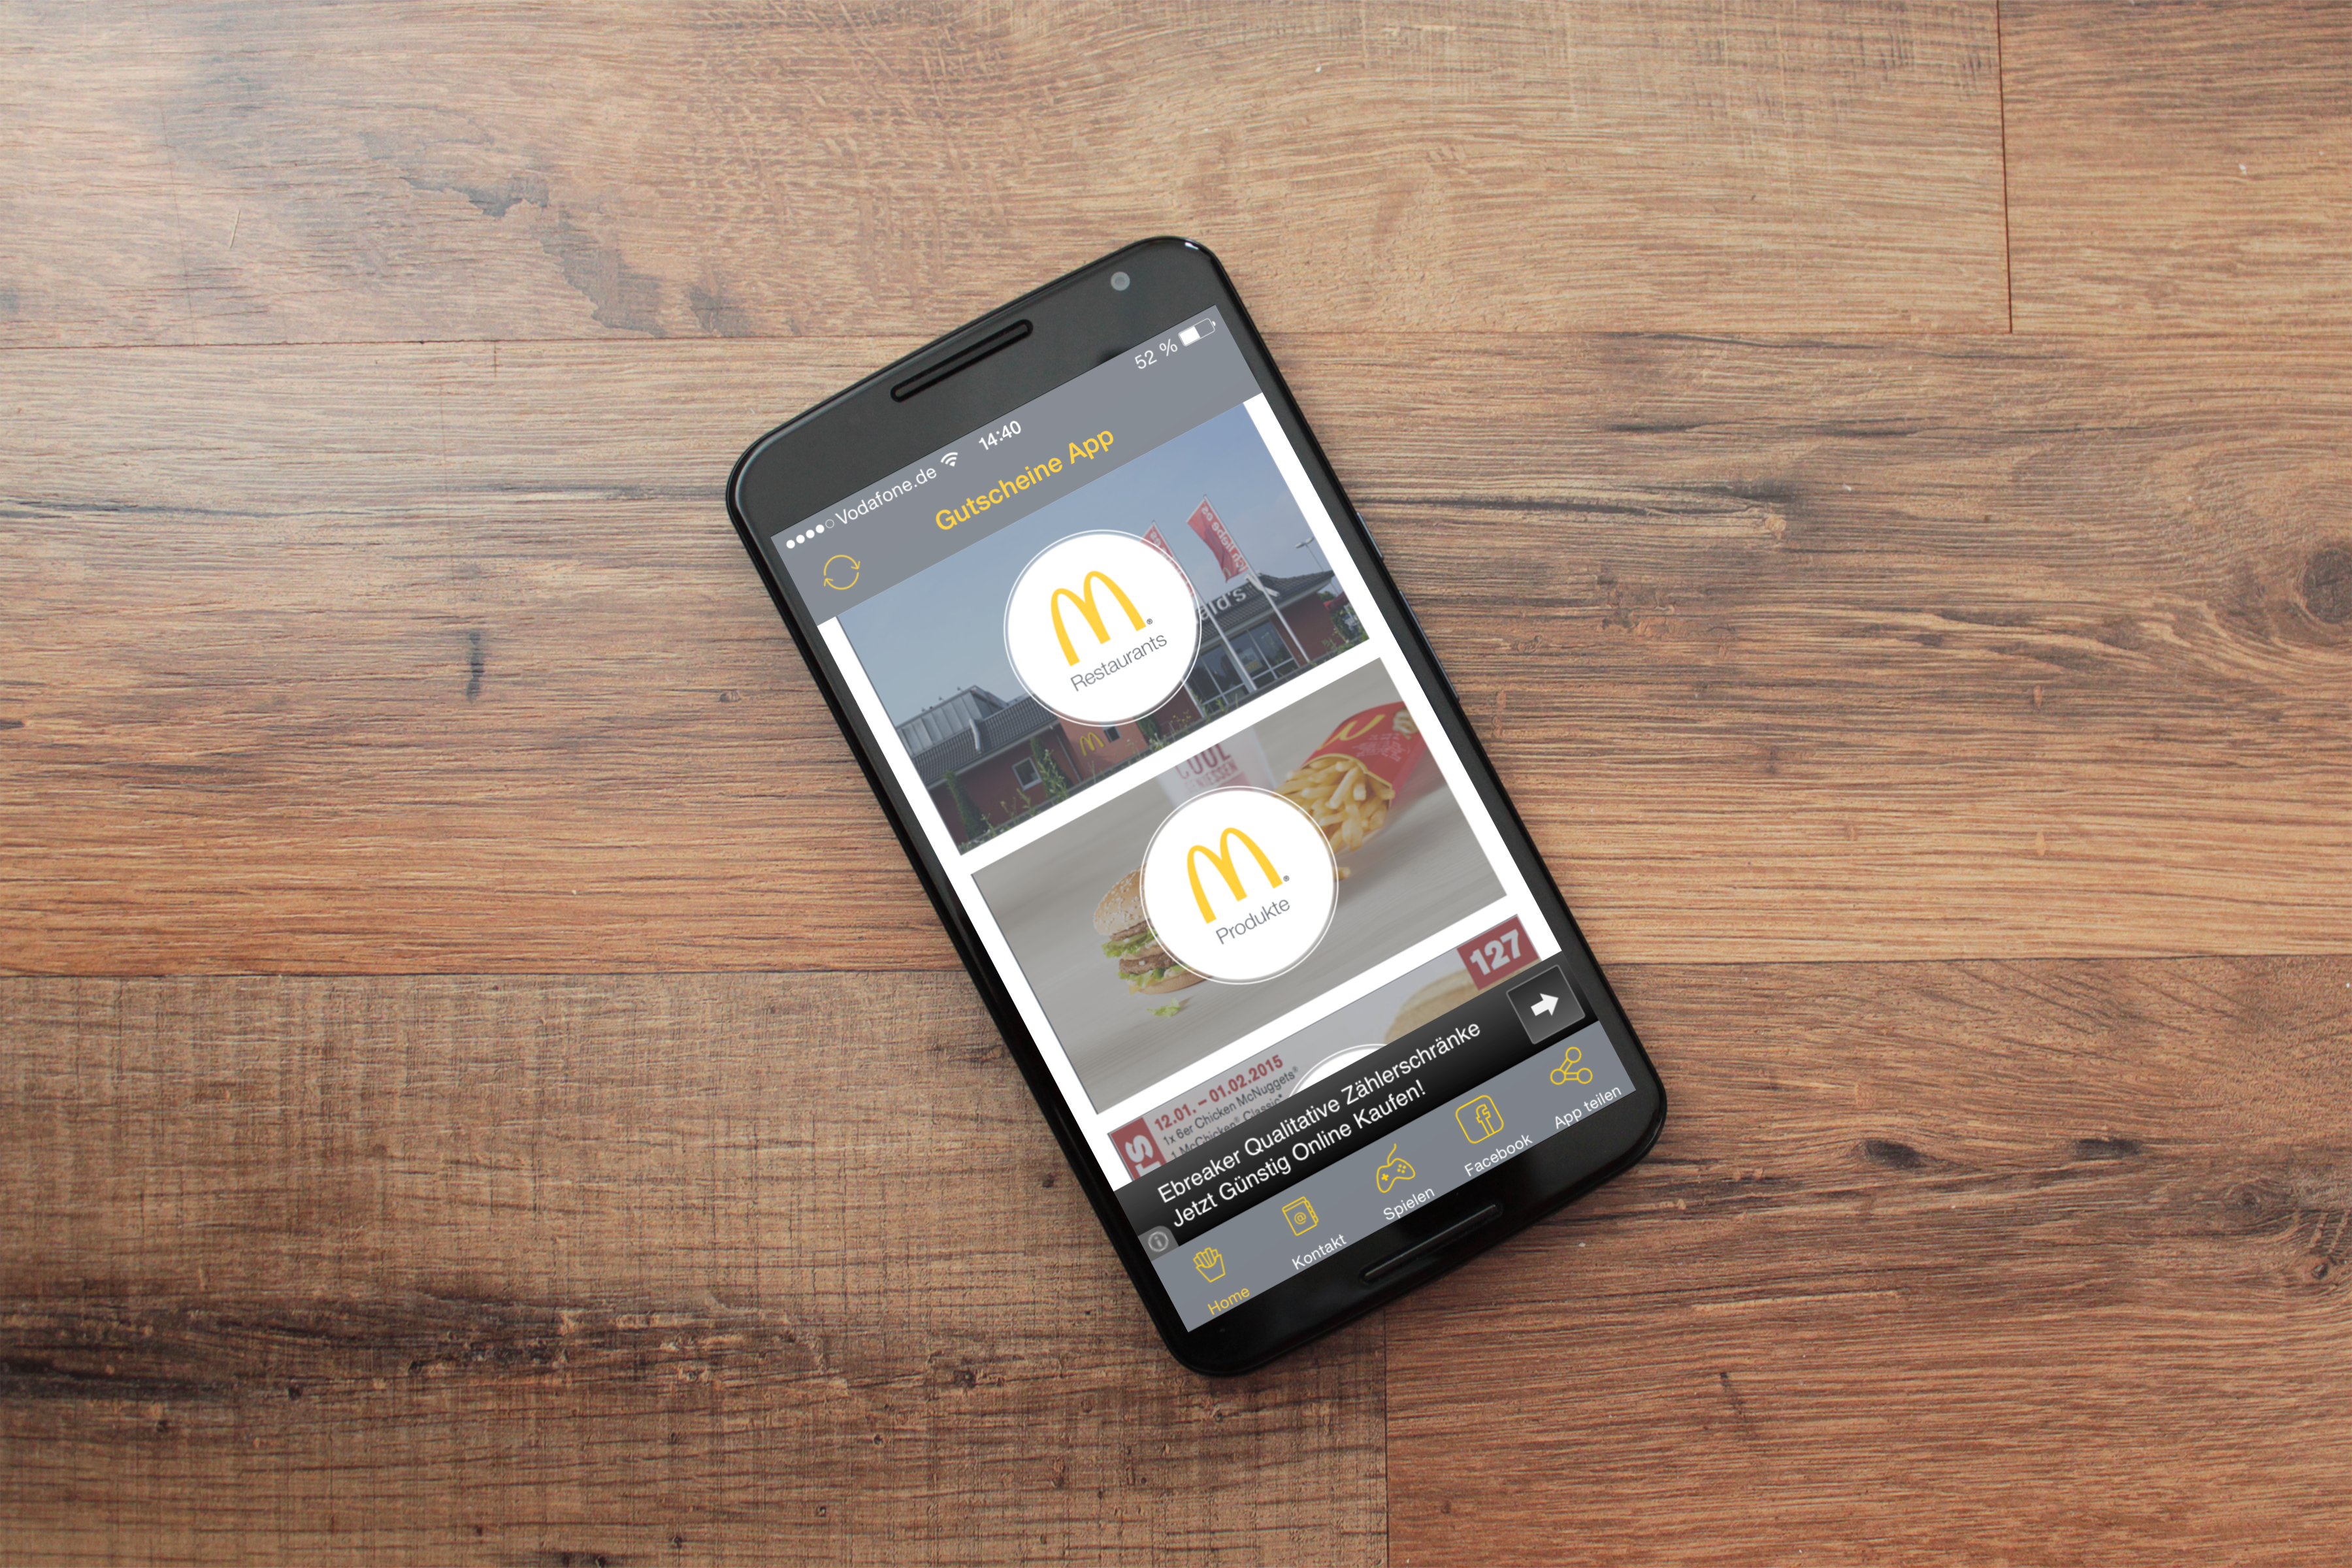 Android application McDonald's Gutscheine App Bonn screenshort